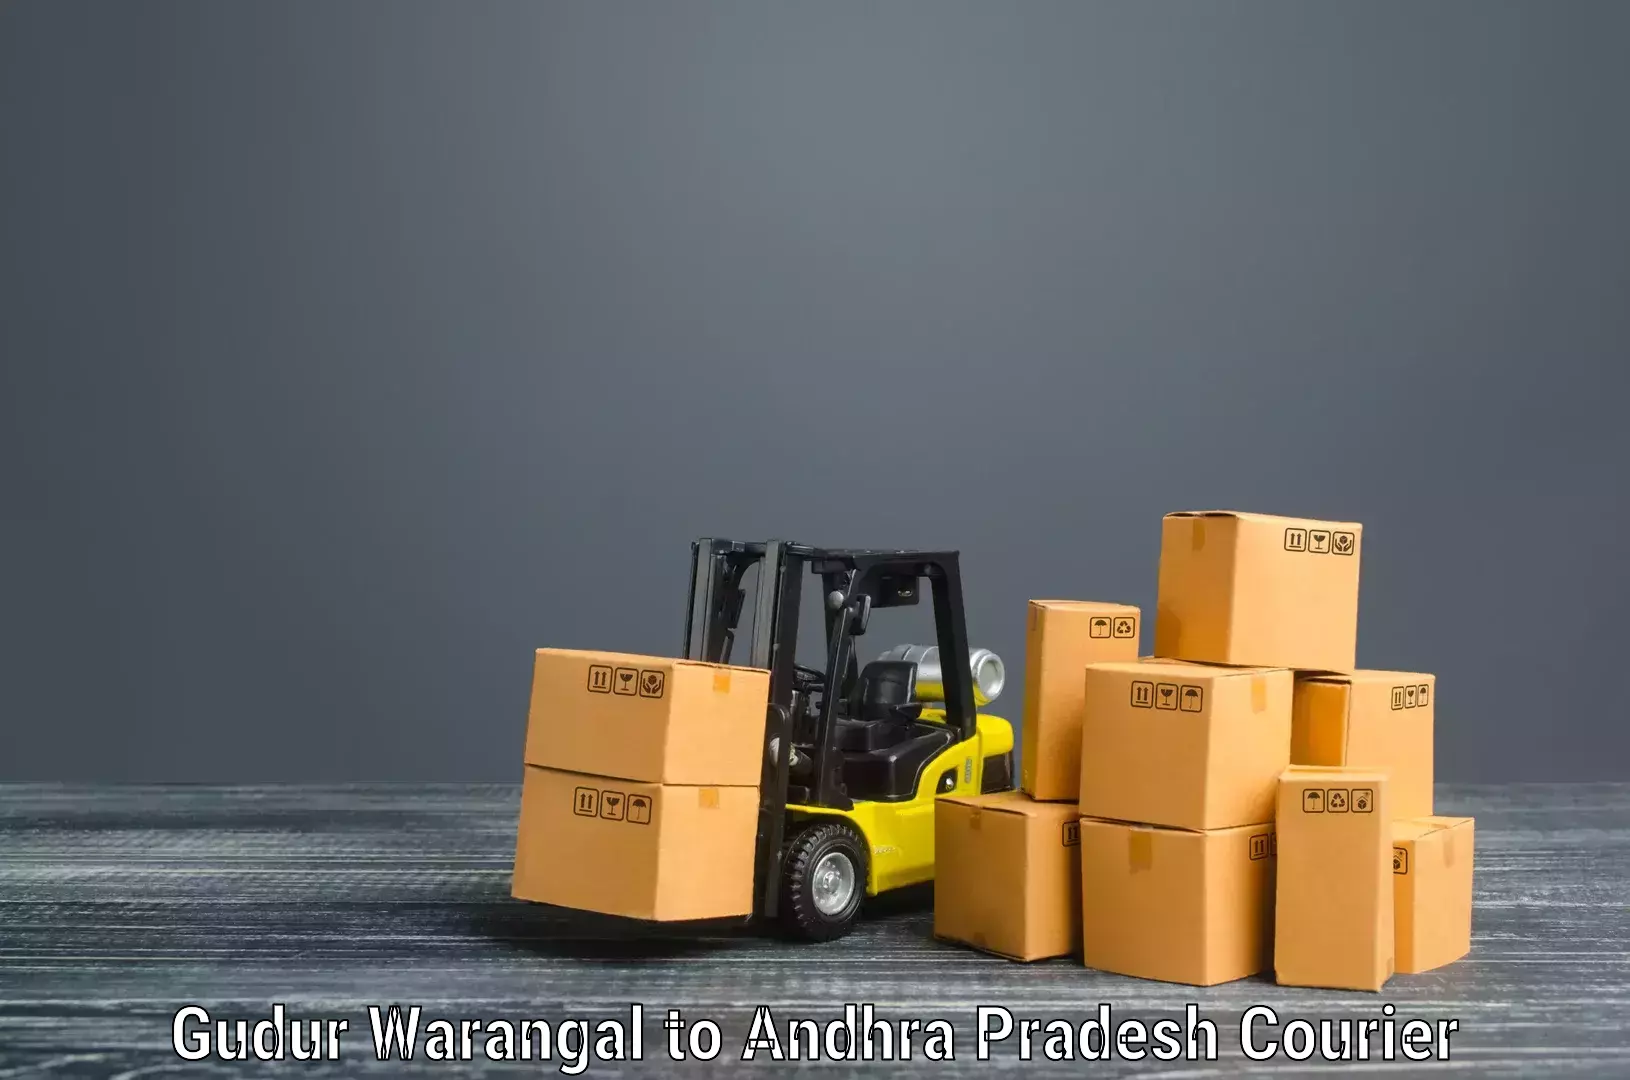 Furniture shipping services Gudur Warangal to Tirupati